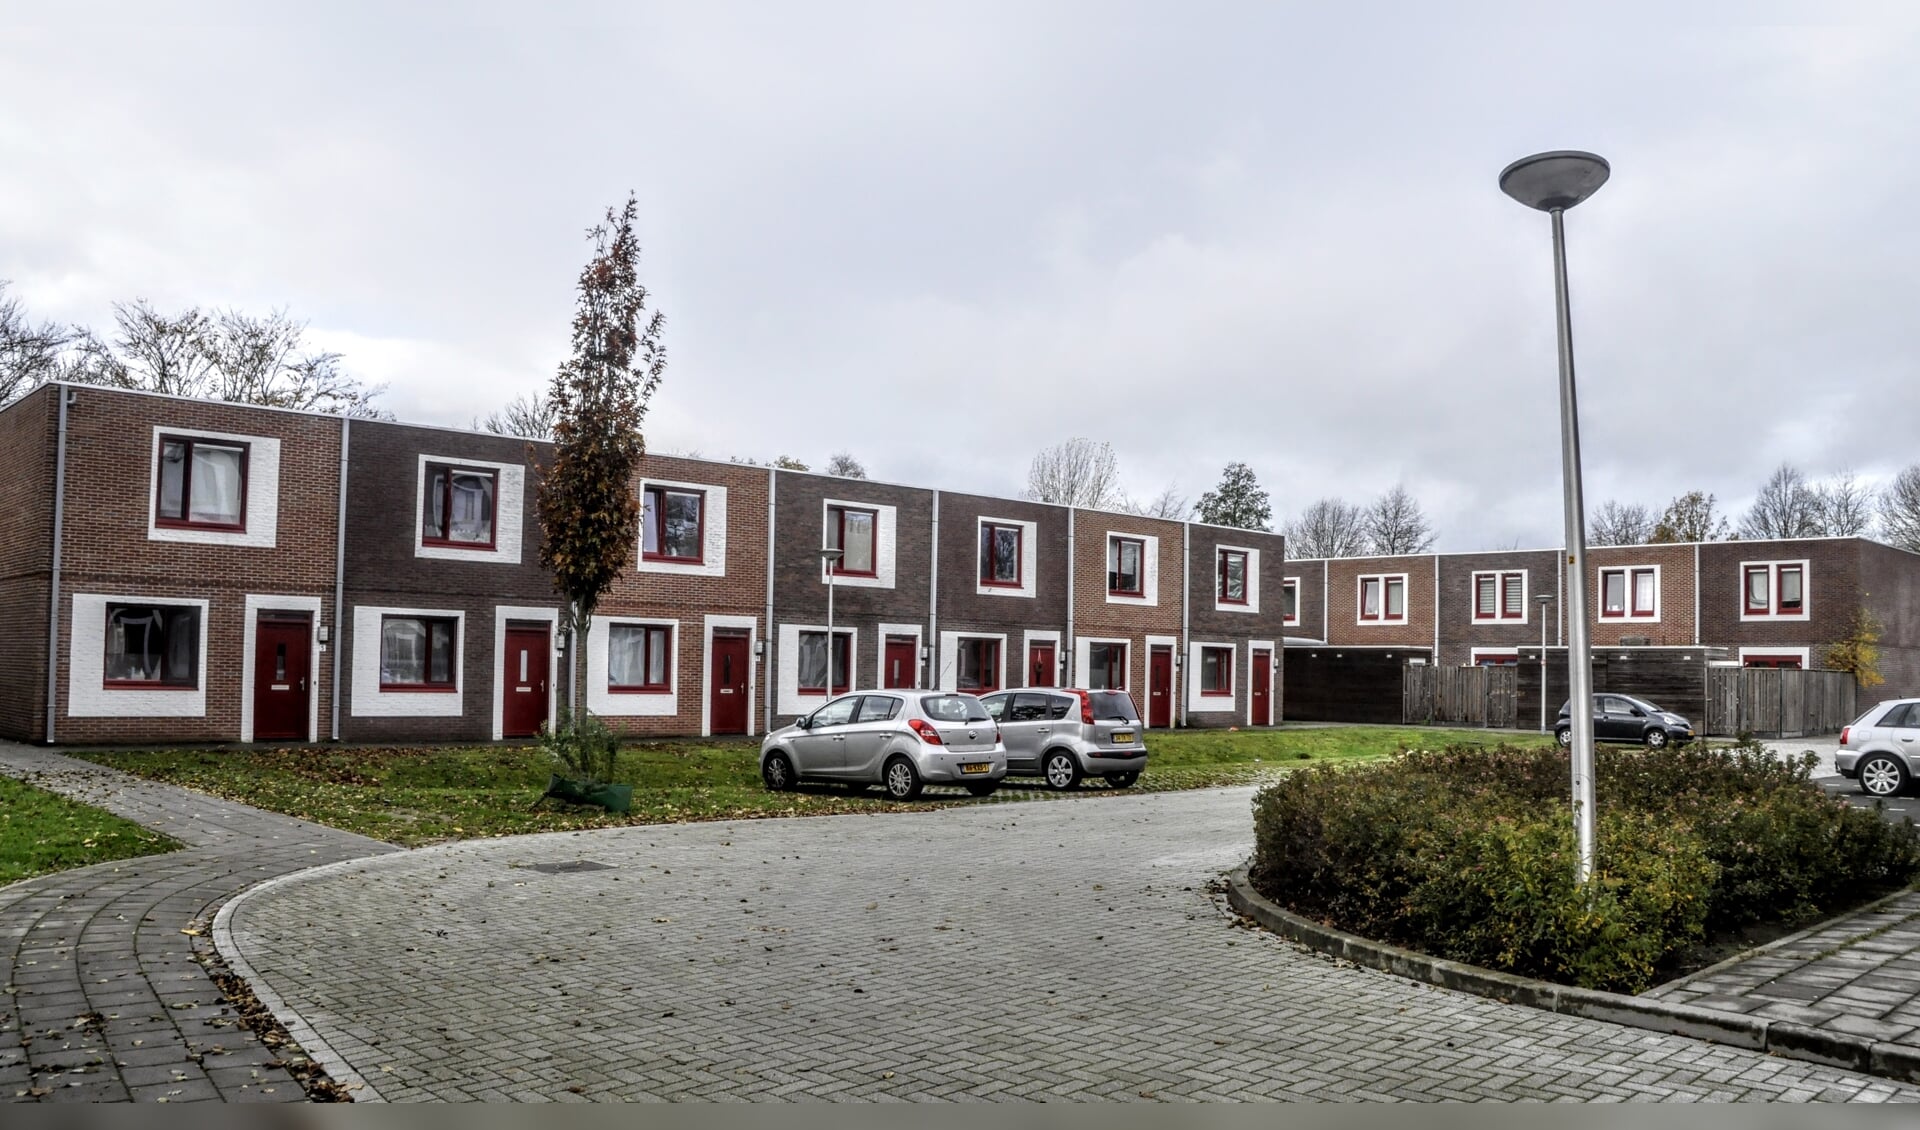 Aan de Churchillstraat in Barneveld verschenen eerder al tijdelijke wooneenheden in de goedkope sector. Barneveld wil de komende jaren meer inzetten op goedkope woningen, onder meer in de vorm van - tijdelijke - flexwoningen, tiny houses en hoogbouw. 